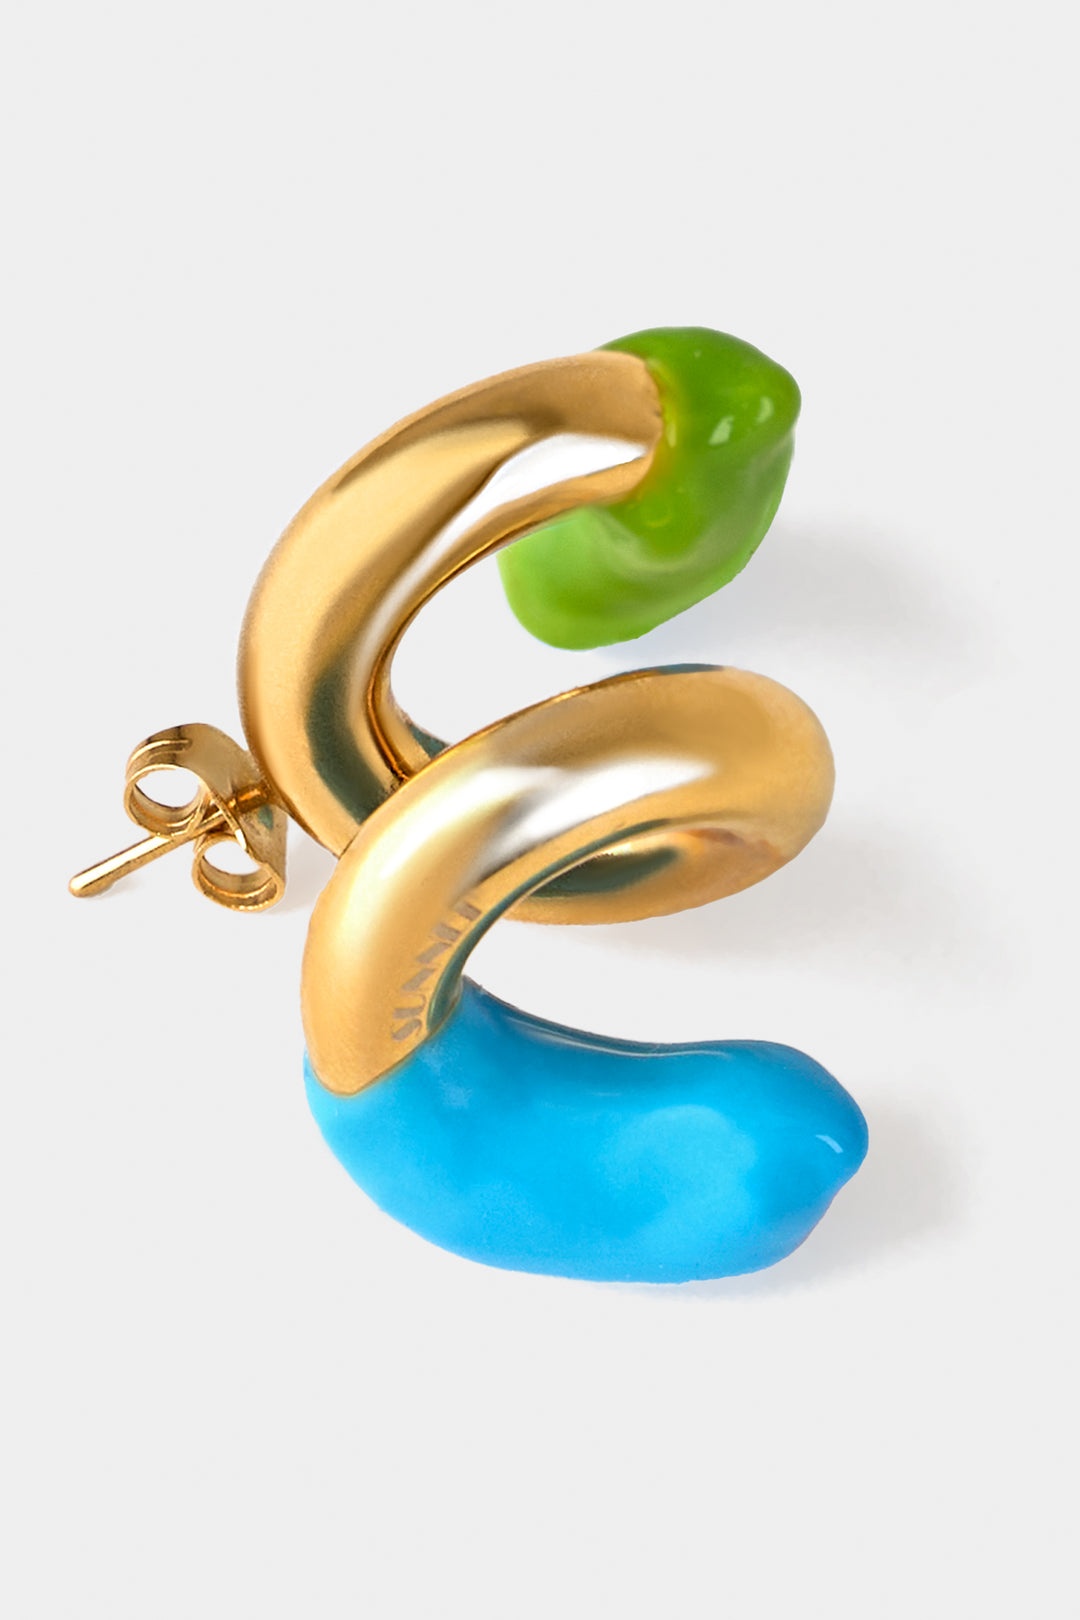 FUSILLO RUBBERIZED GOLD EARRINGS / sky blue & fern green - 3